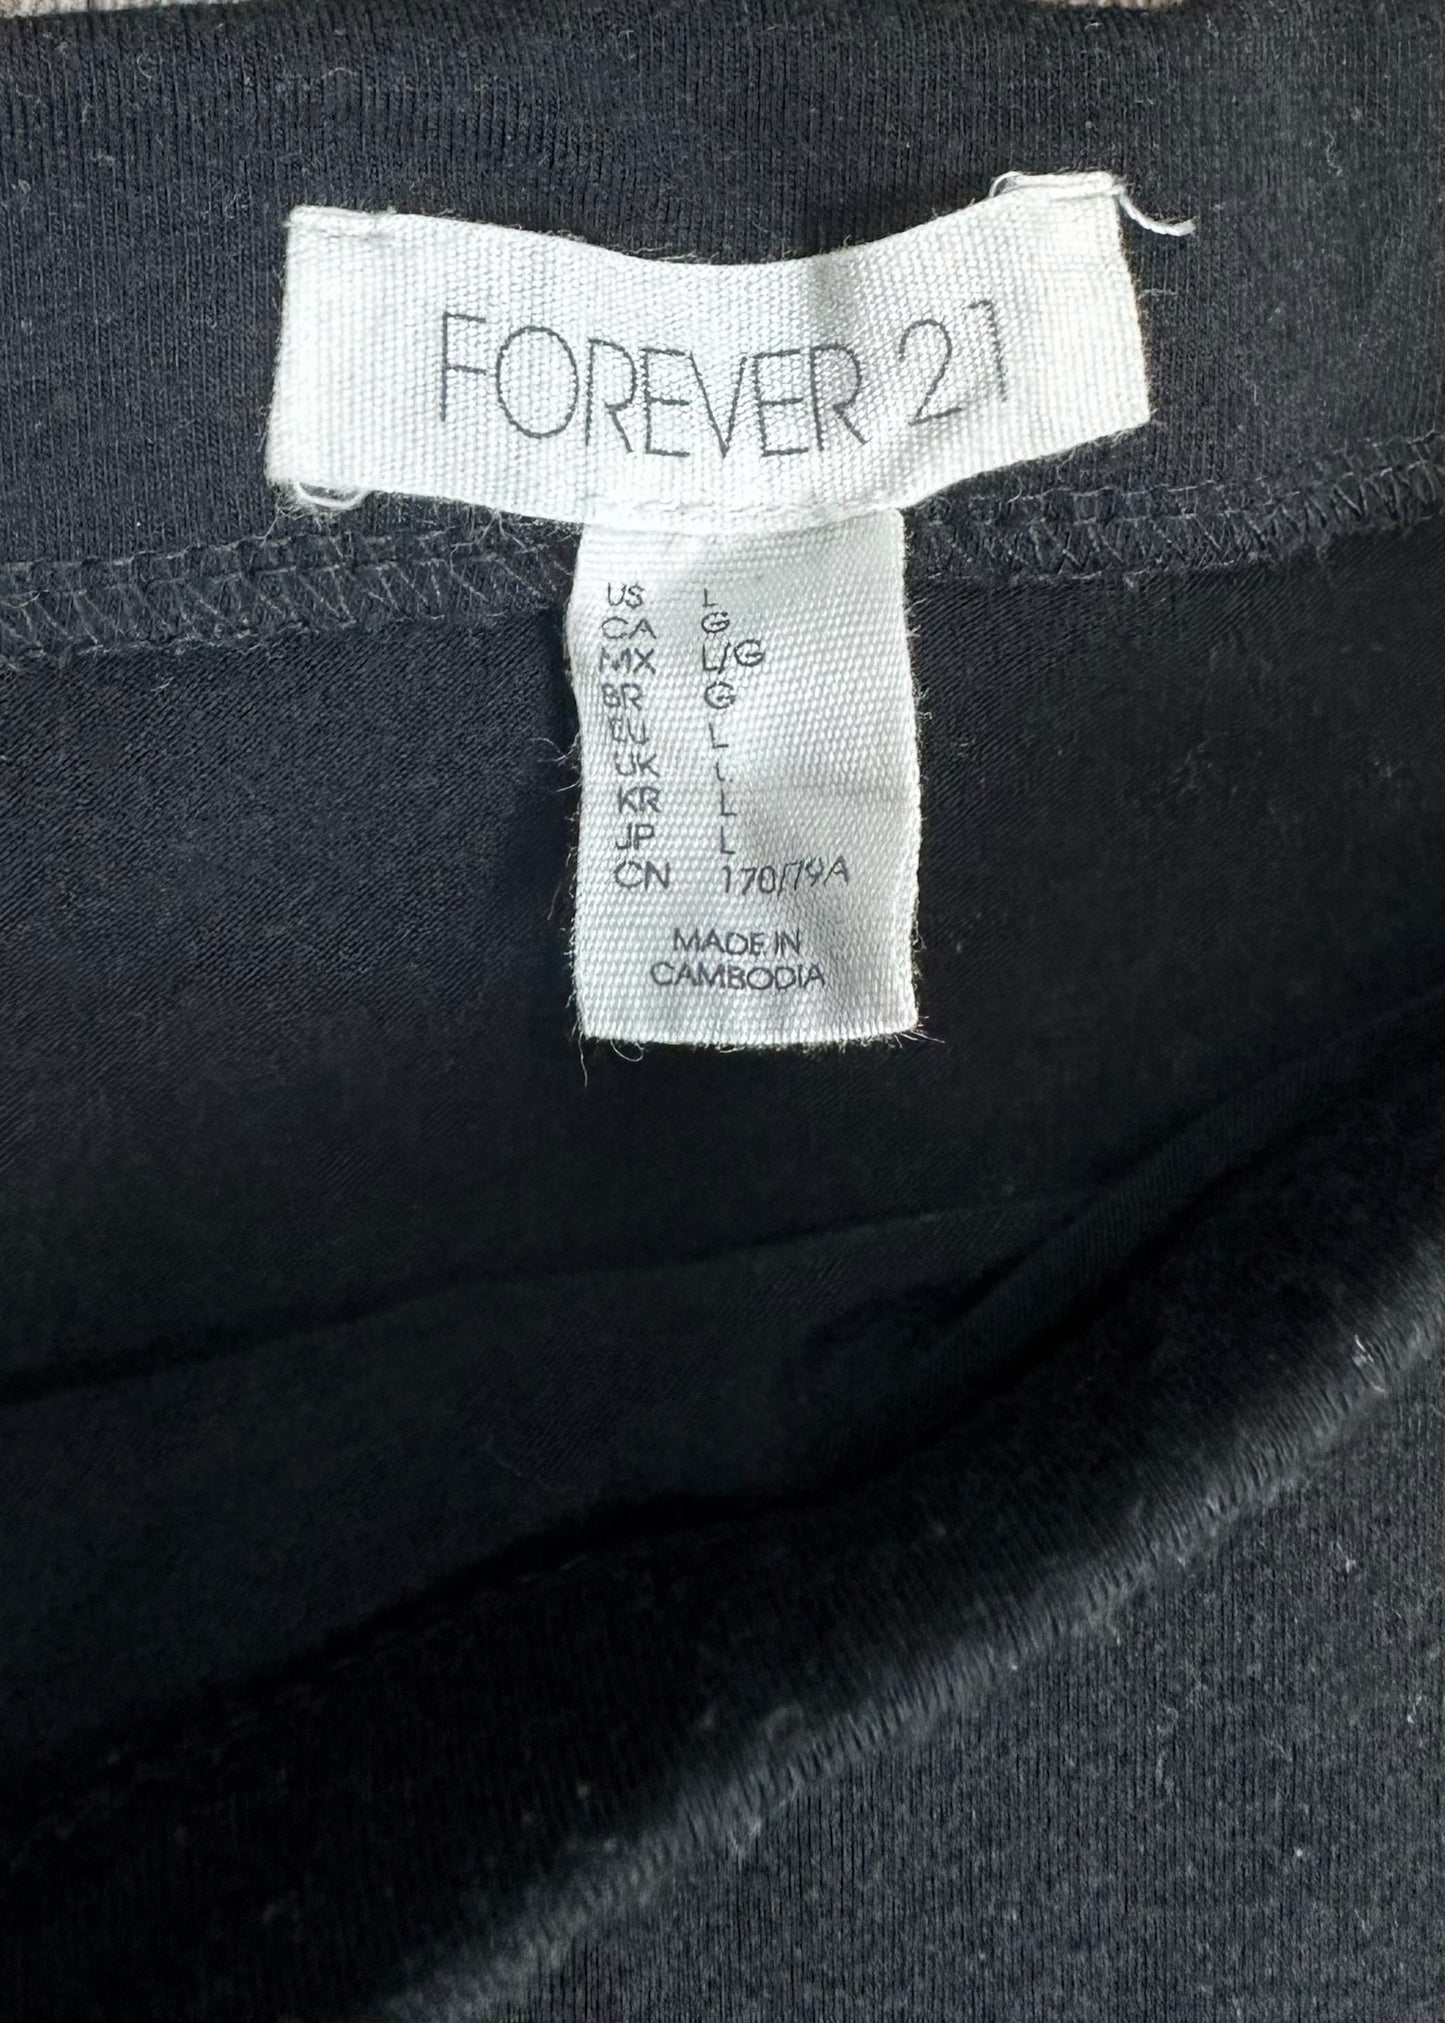 Black Midi Skirt by Forever 21